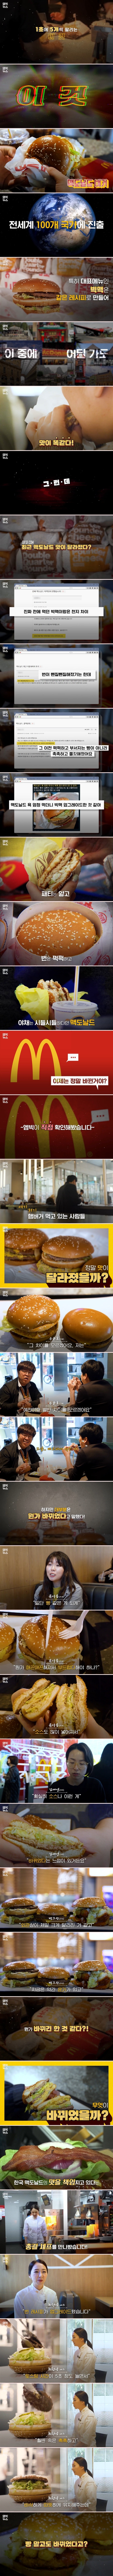 맥도날드 맛 변했다, 팩트체크 (1).jpg